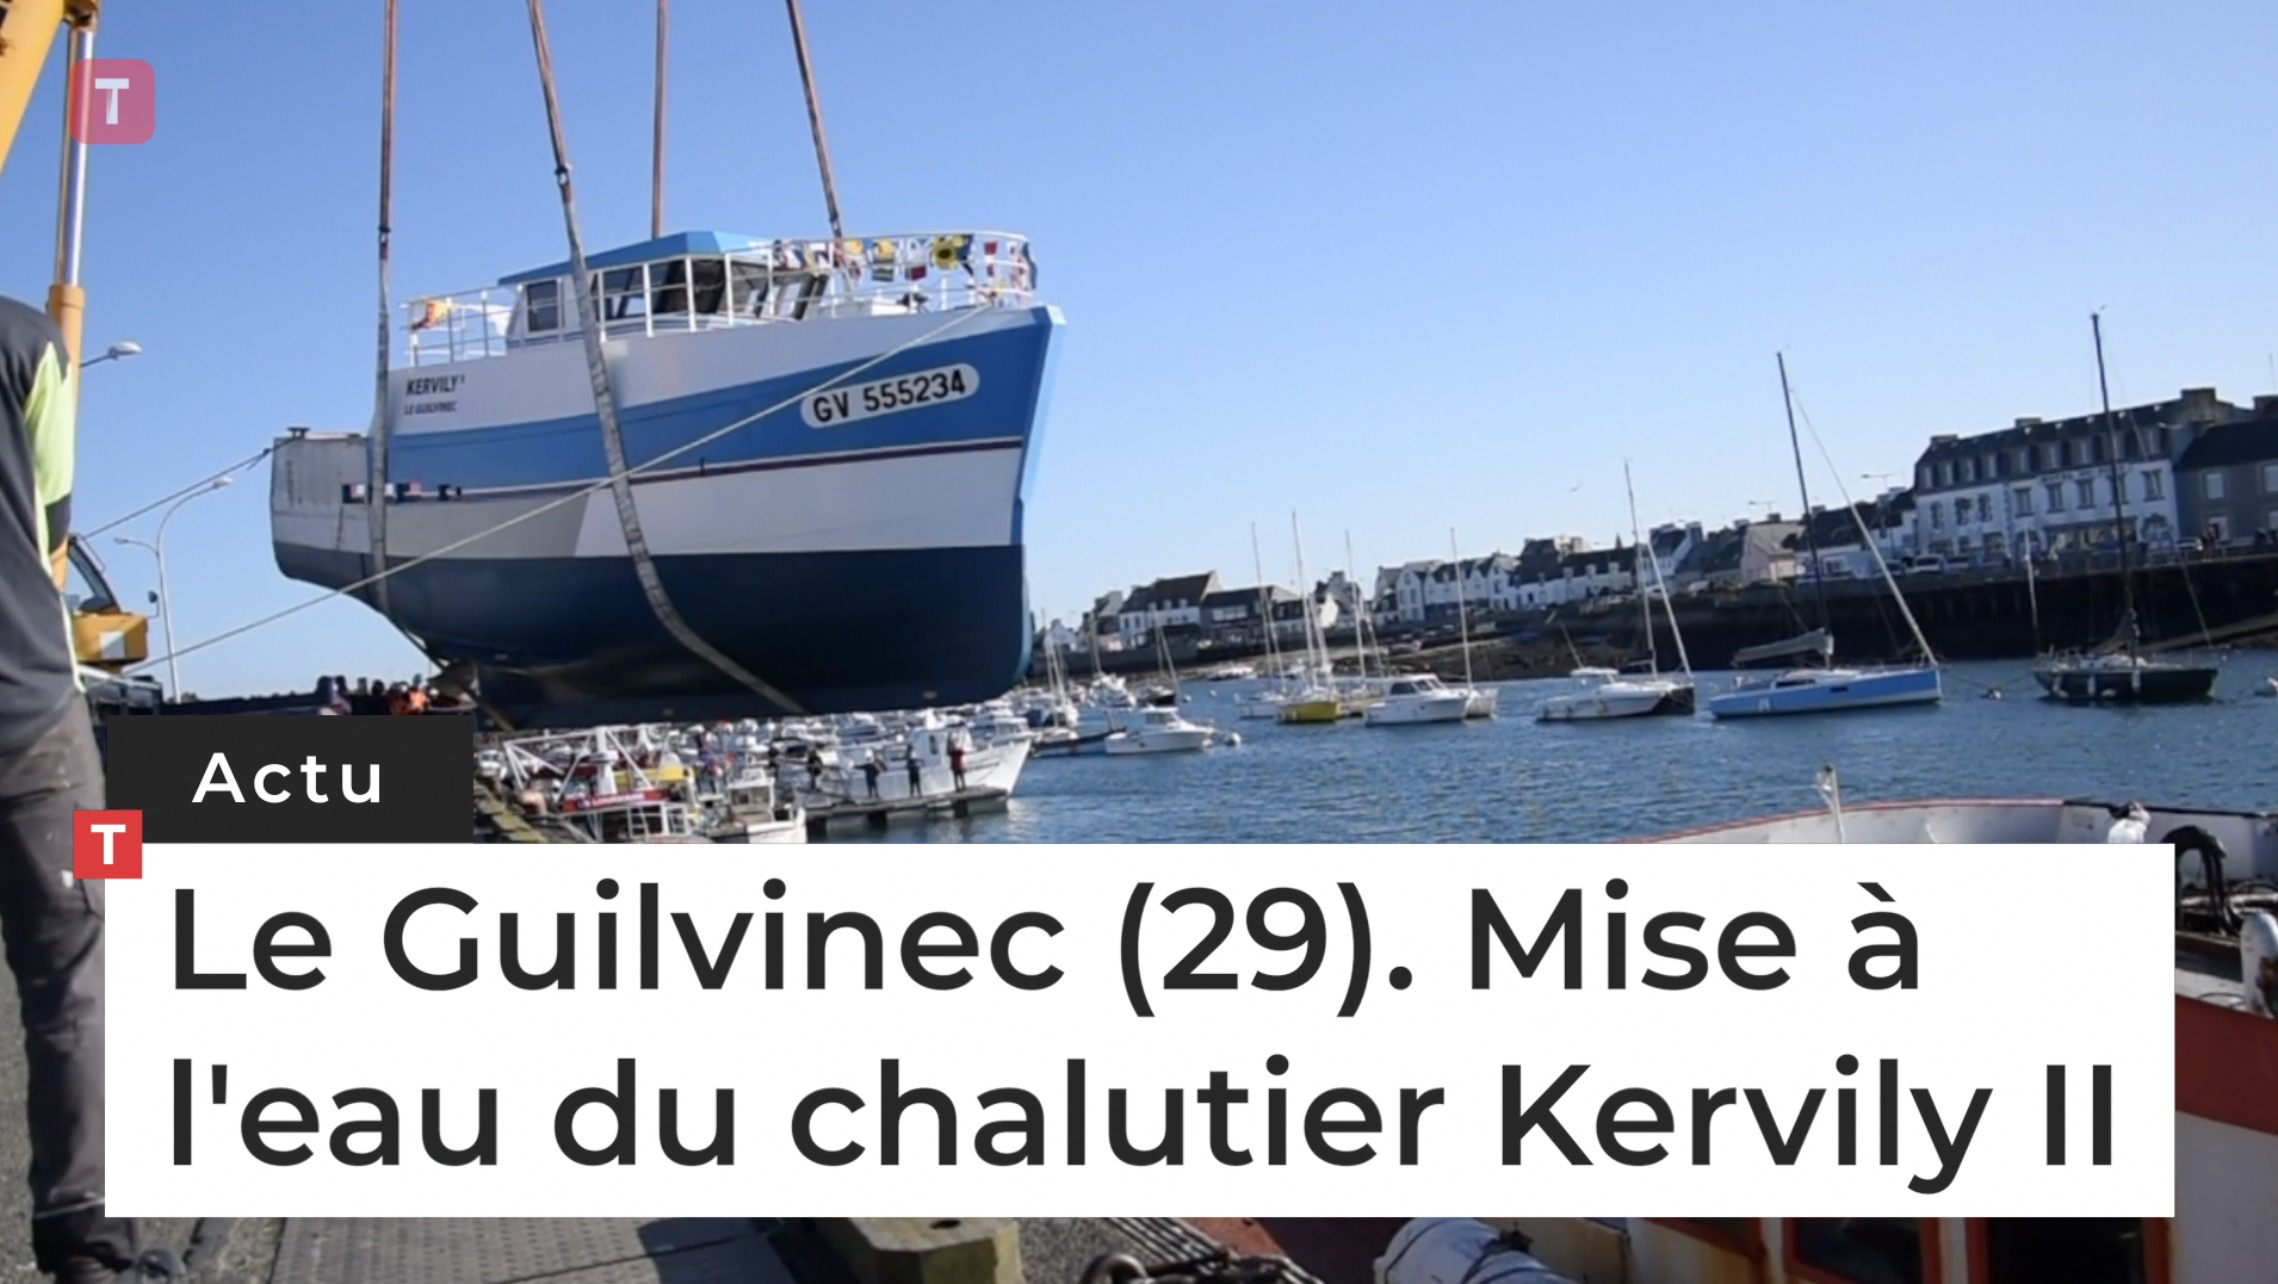 Le Guilvinec (29). Mise à l'eau du chalutier Kervily II (Le Télégramme)